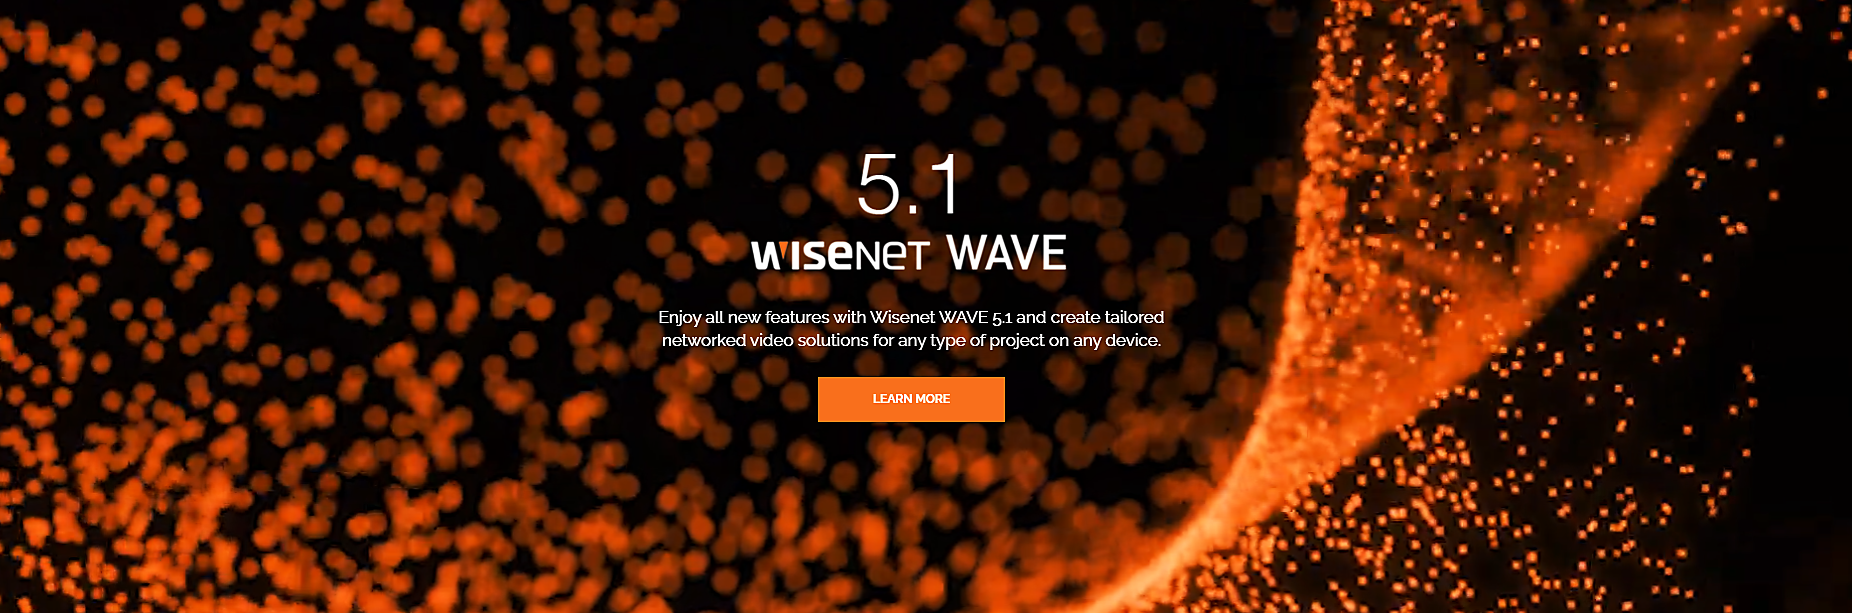 https://wavevms.com/wisenet-wave-5-1/